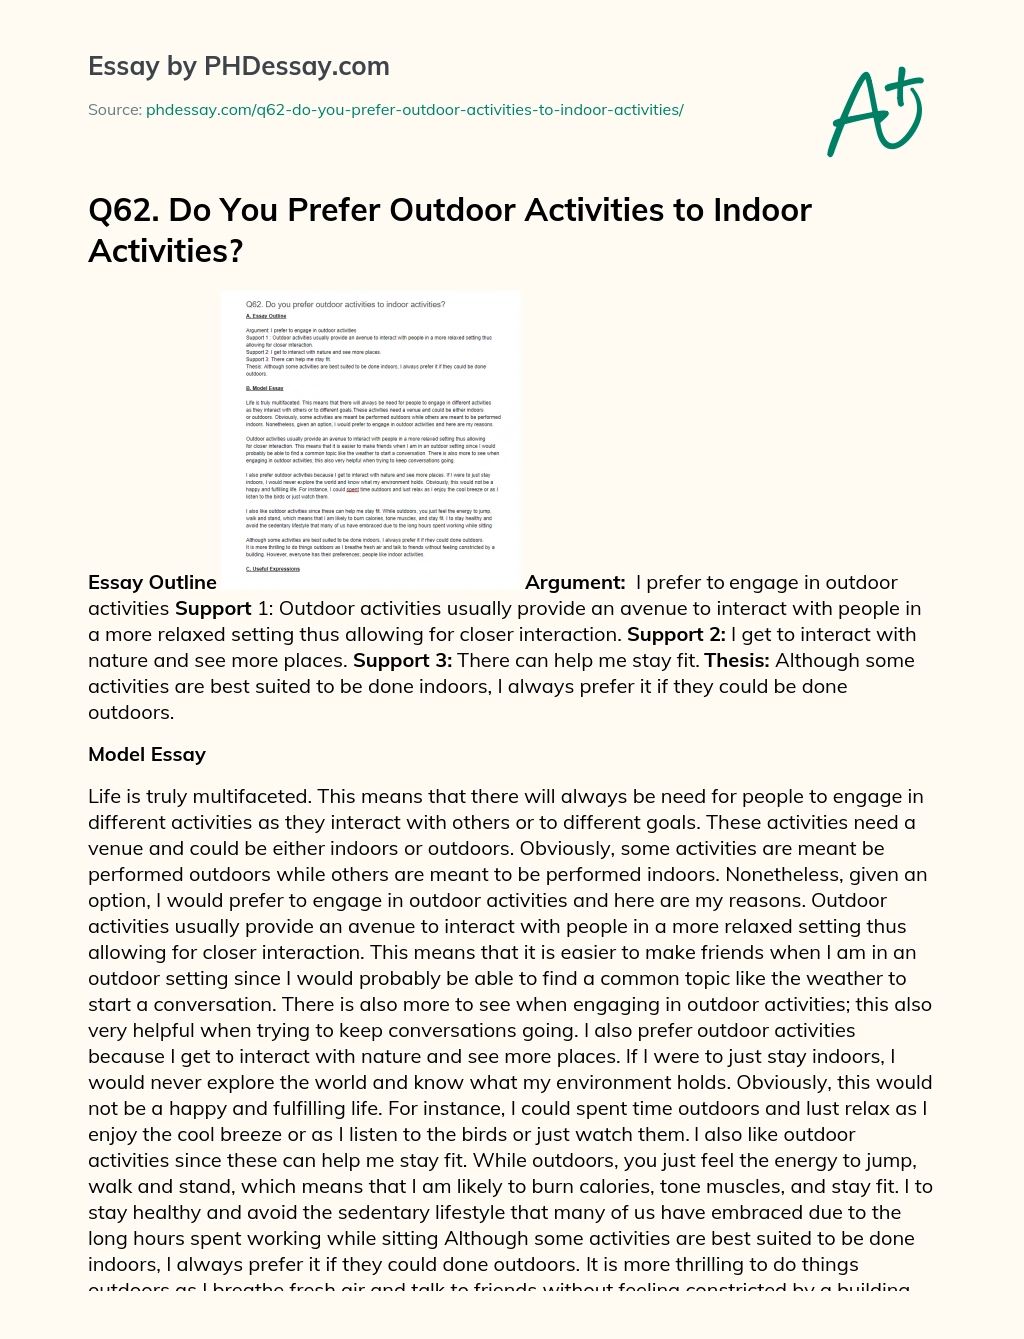 Q62. Do You Prefer Outdoor Activities to Indoor Activities? essay